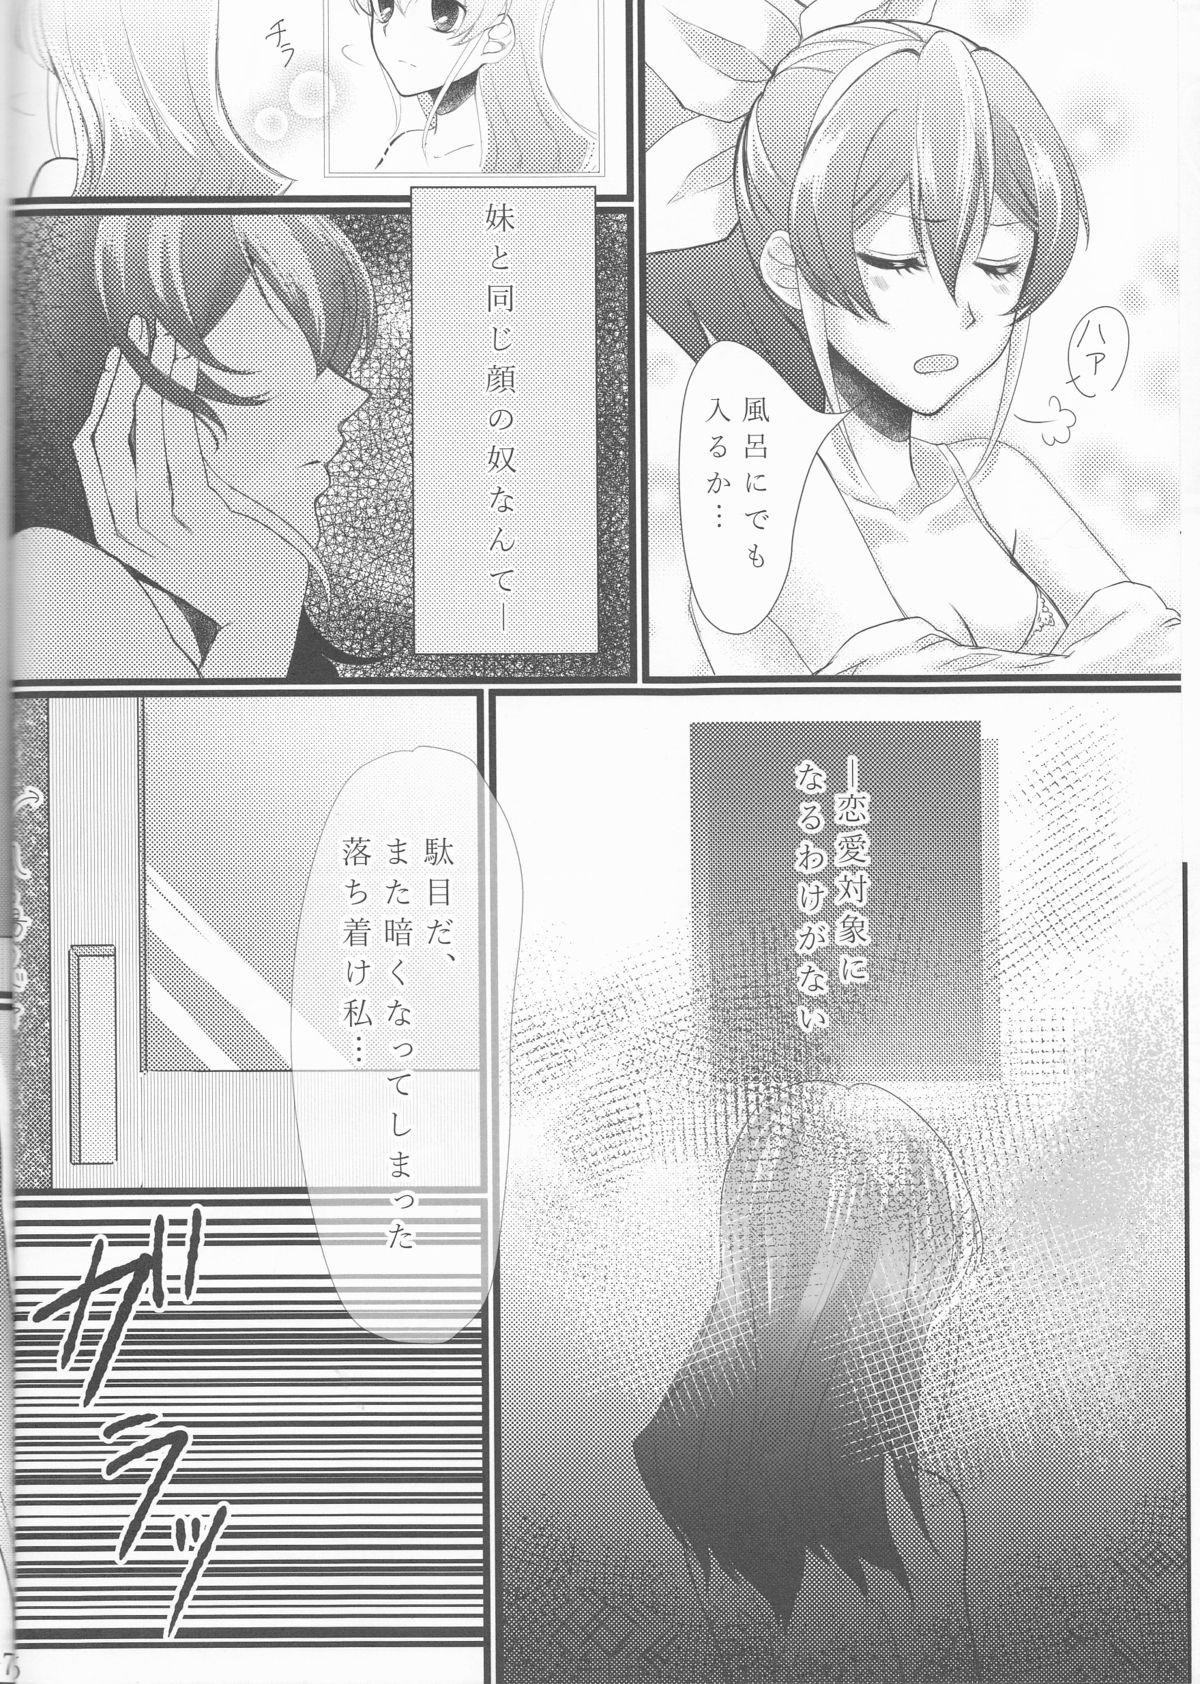 Show Hoshoku Kankei ni Aru Serena to Shun ga Renai Kanjou o Idaku to Kou Naru. - Yu-gi-oh arc-v Gay Pawn - Page 7